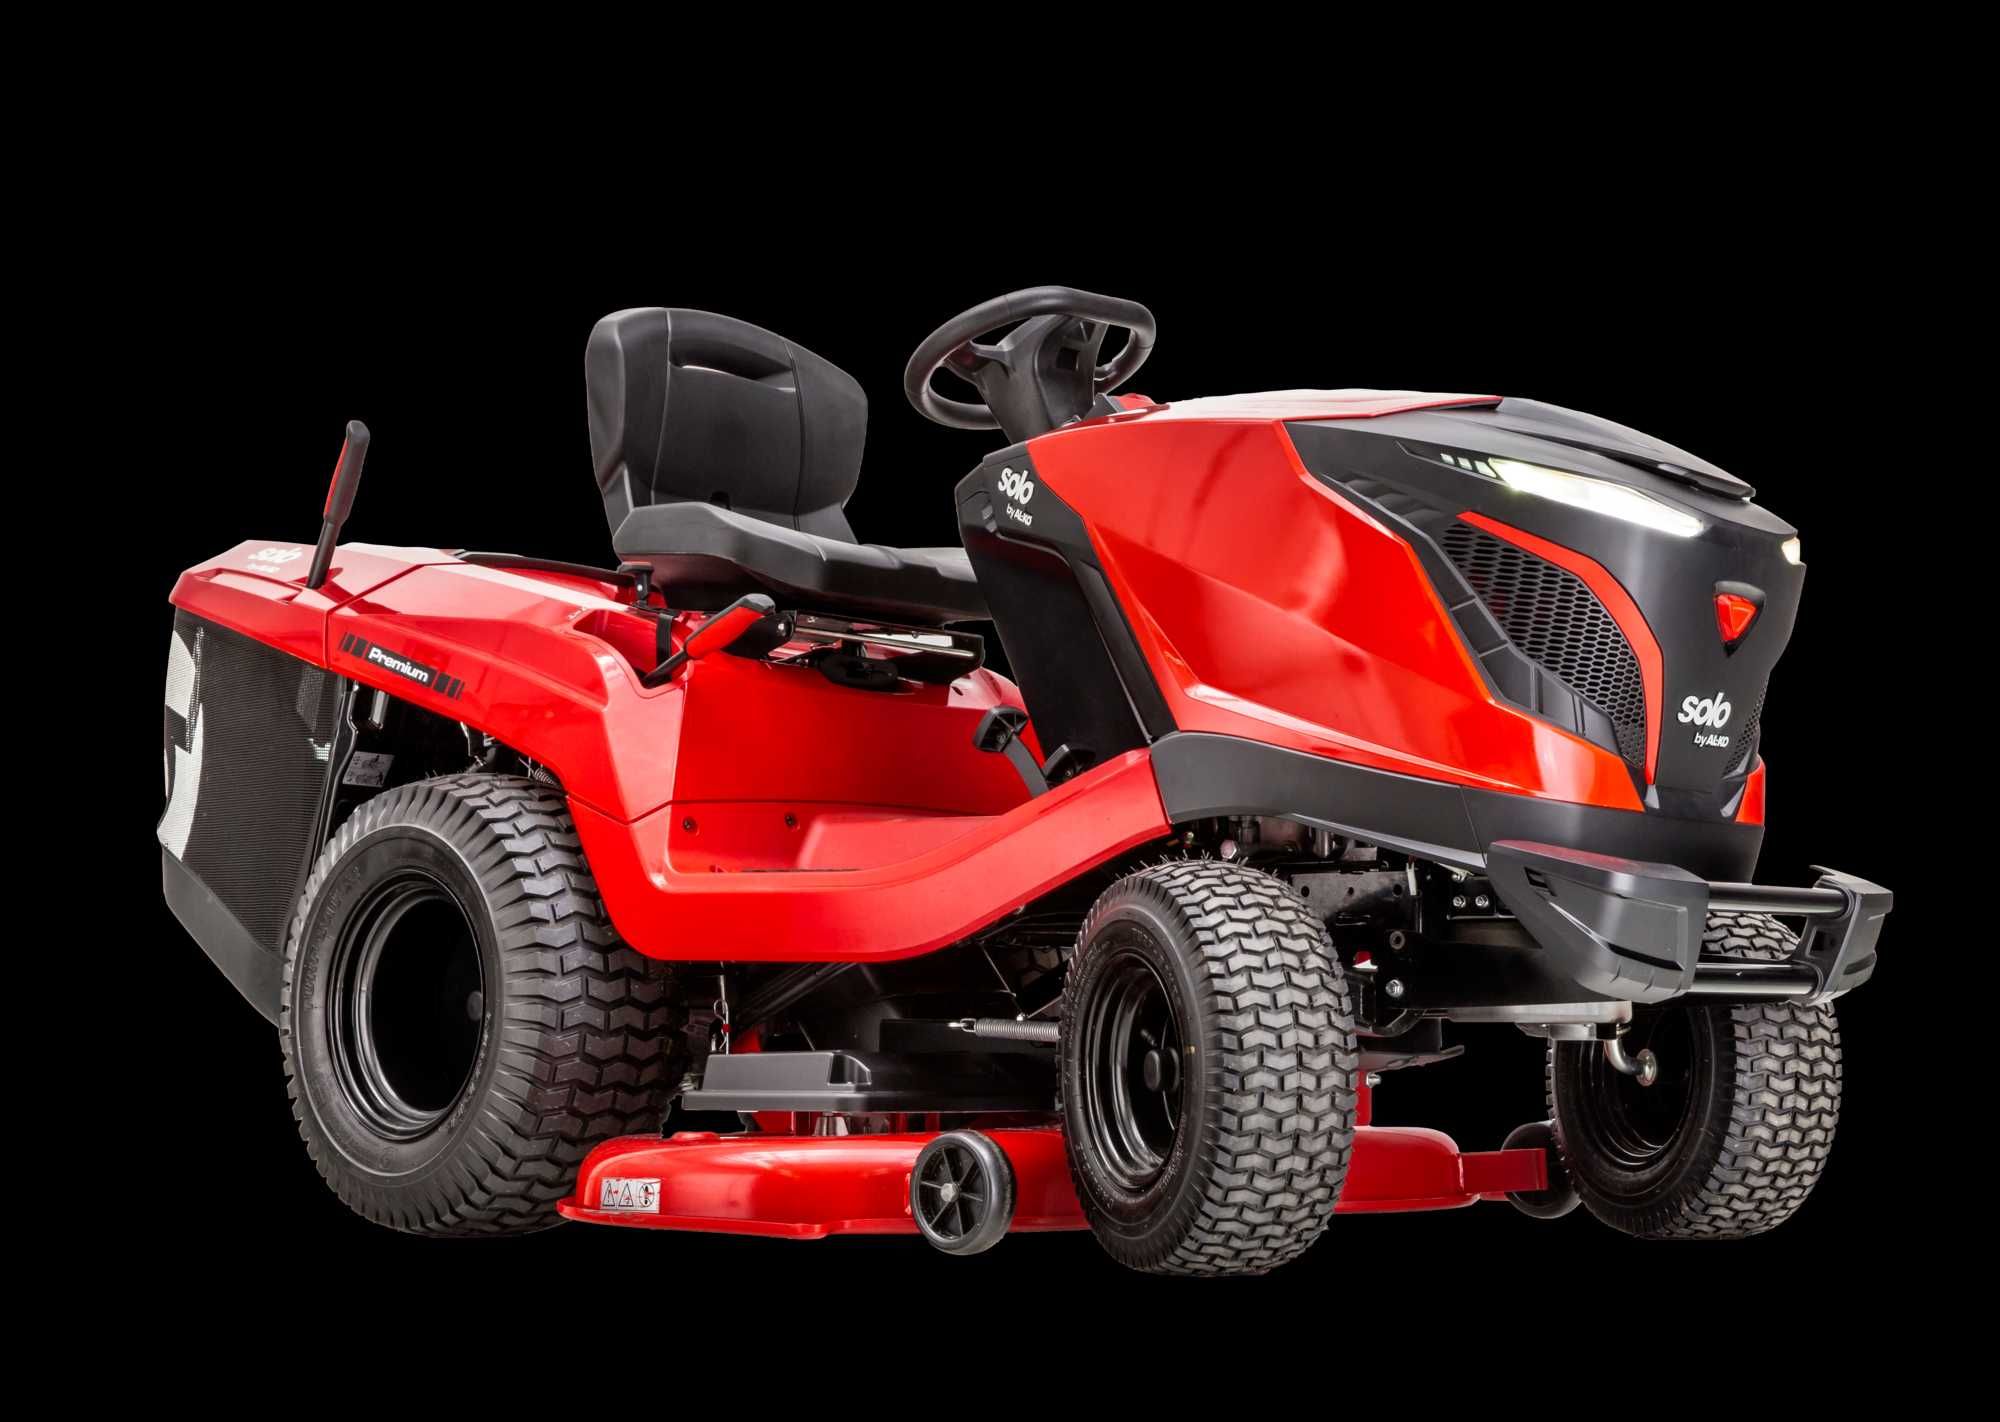 AL-KO Traktor Ogrodowy T24 125.4 HD V2 Premium Pro 125cm 24KM Wysyłka